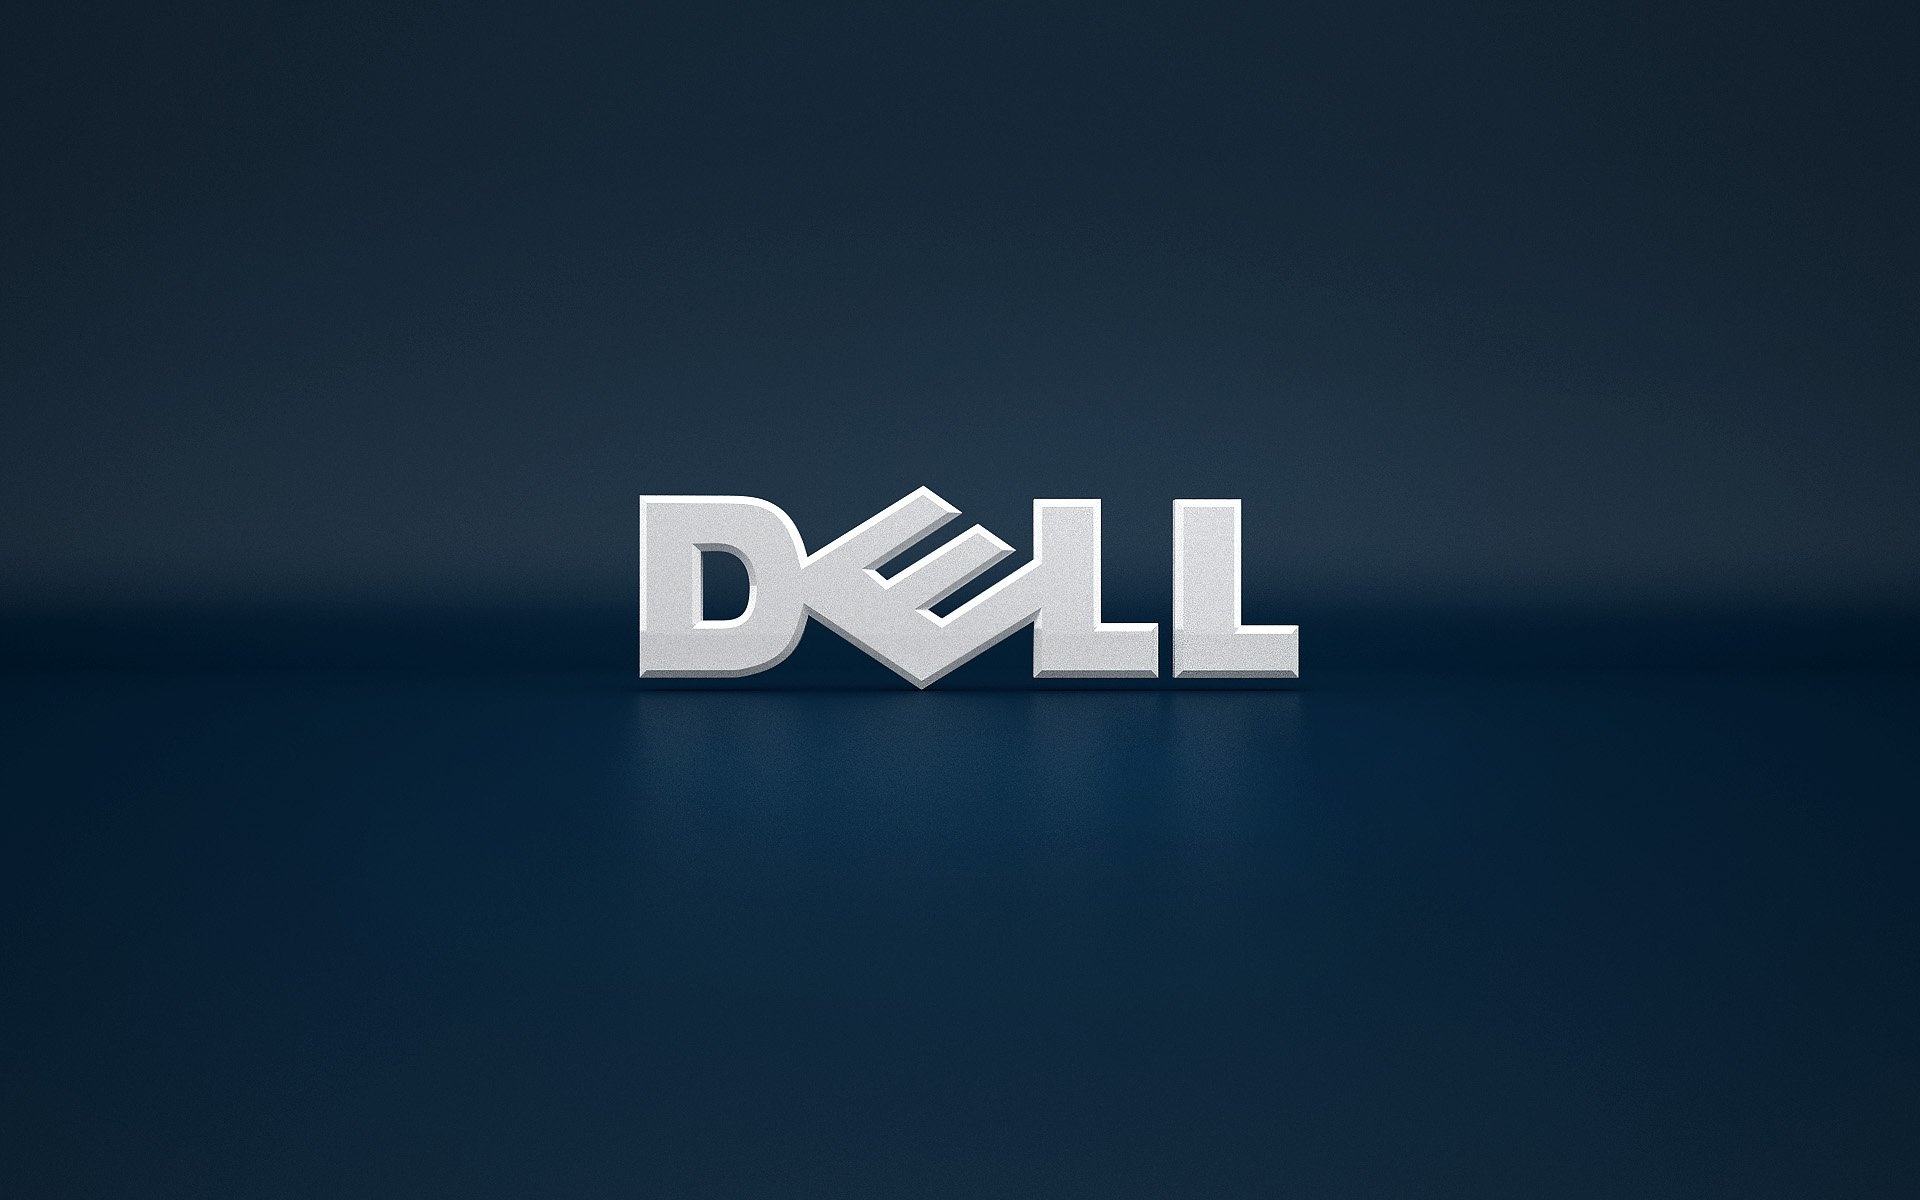 Laden Sie Dell HD-Desktop-Hintergründe herunter